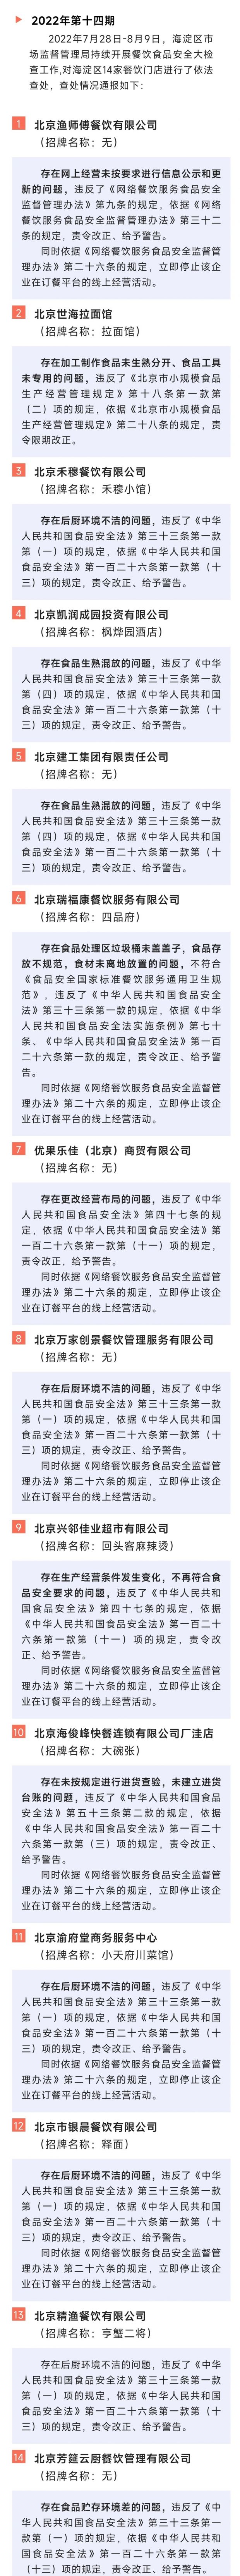 存在食品安全问题北京海淀14家餐饮单位被查处